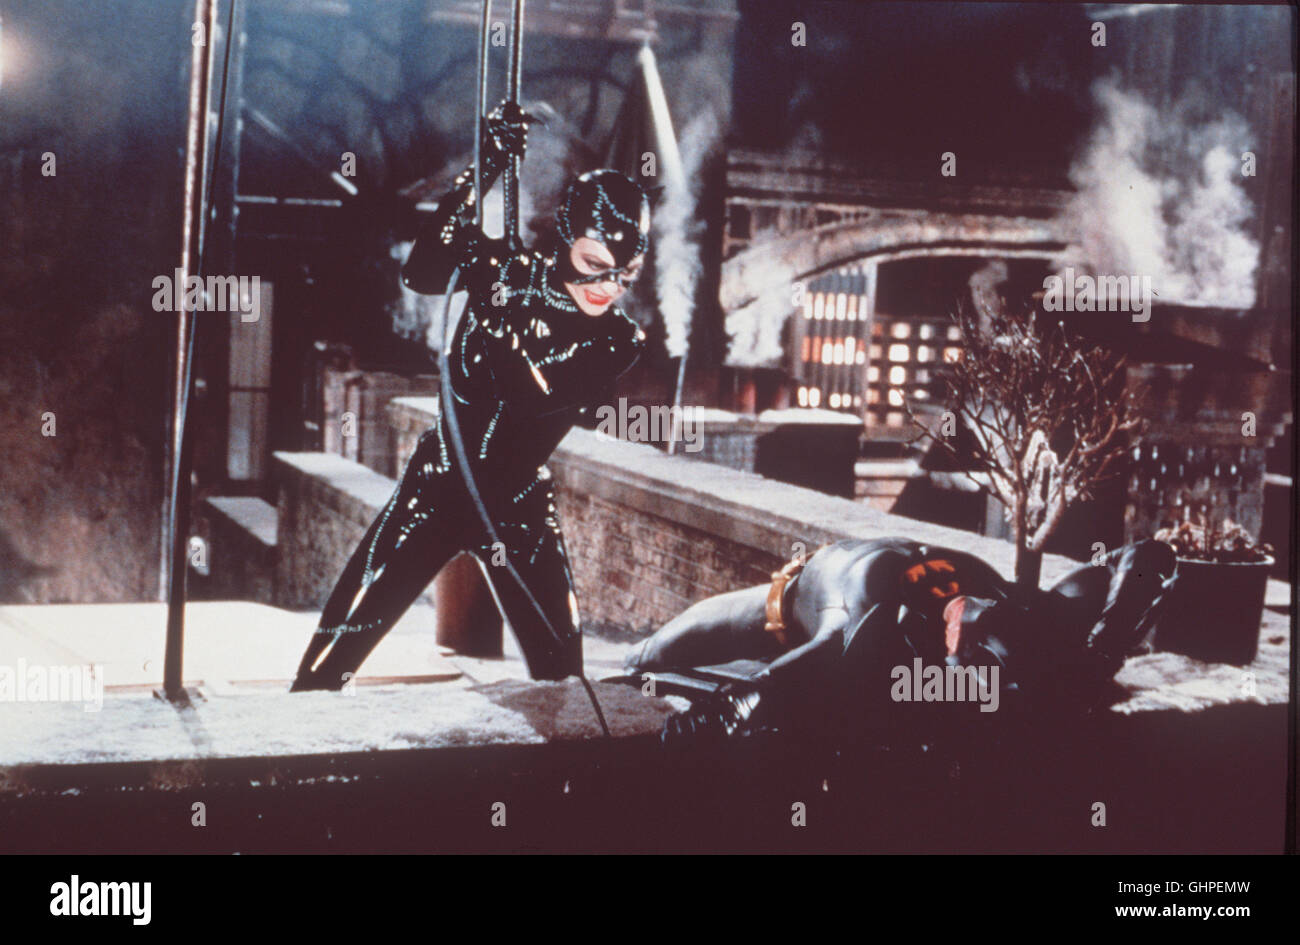 BATMANS RÜCKKEHR Batman Returns USA 1992 - Tim Burton Der Fledermaus-Held Batman muss in Gotham City nicht nur gegen den ebenso bösartigen wie brillianten Pinguin und den vampirgleichen Wirtschaftsmogul Max Schreck kämpfen - eine ebenso trickreiche wie gefährliche Gegnerin ist auch die schöne, faszinierende Catwoman, deren Charme Batman unweigerlich verfällt. Bild: MICHELLE PFEIFFER (Catwoman, Selina), MICHAEL KEATON (Batman, Bruce Wayne) Regie: Tim Burton aka. Batman Returns Stock Photo